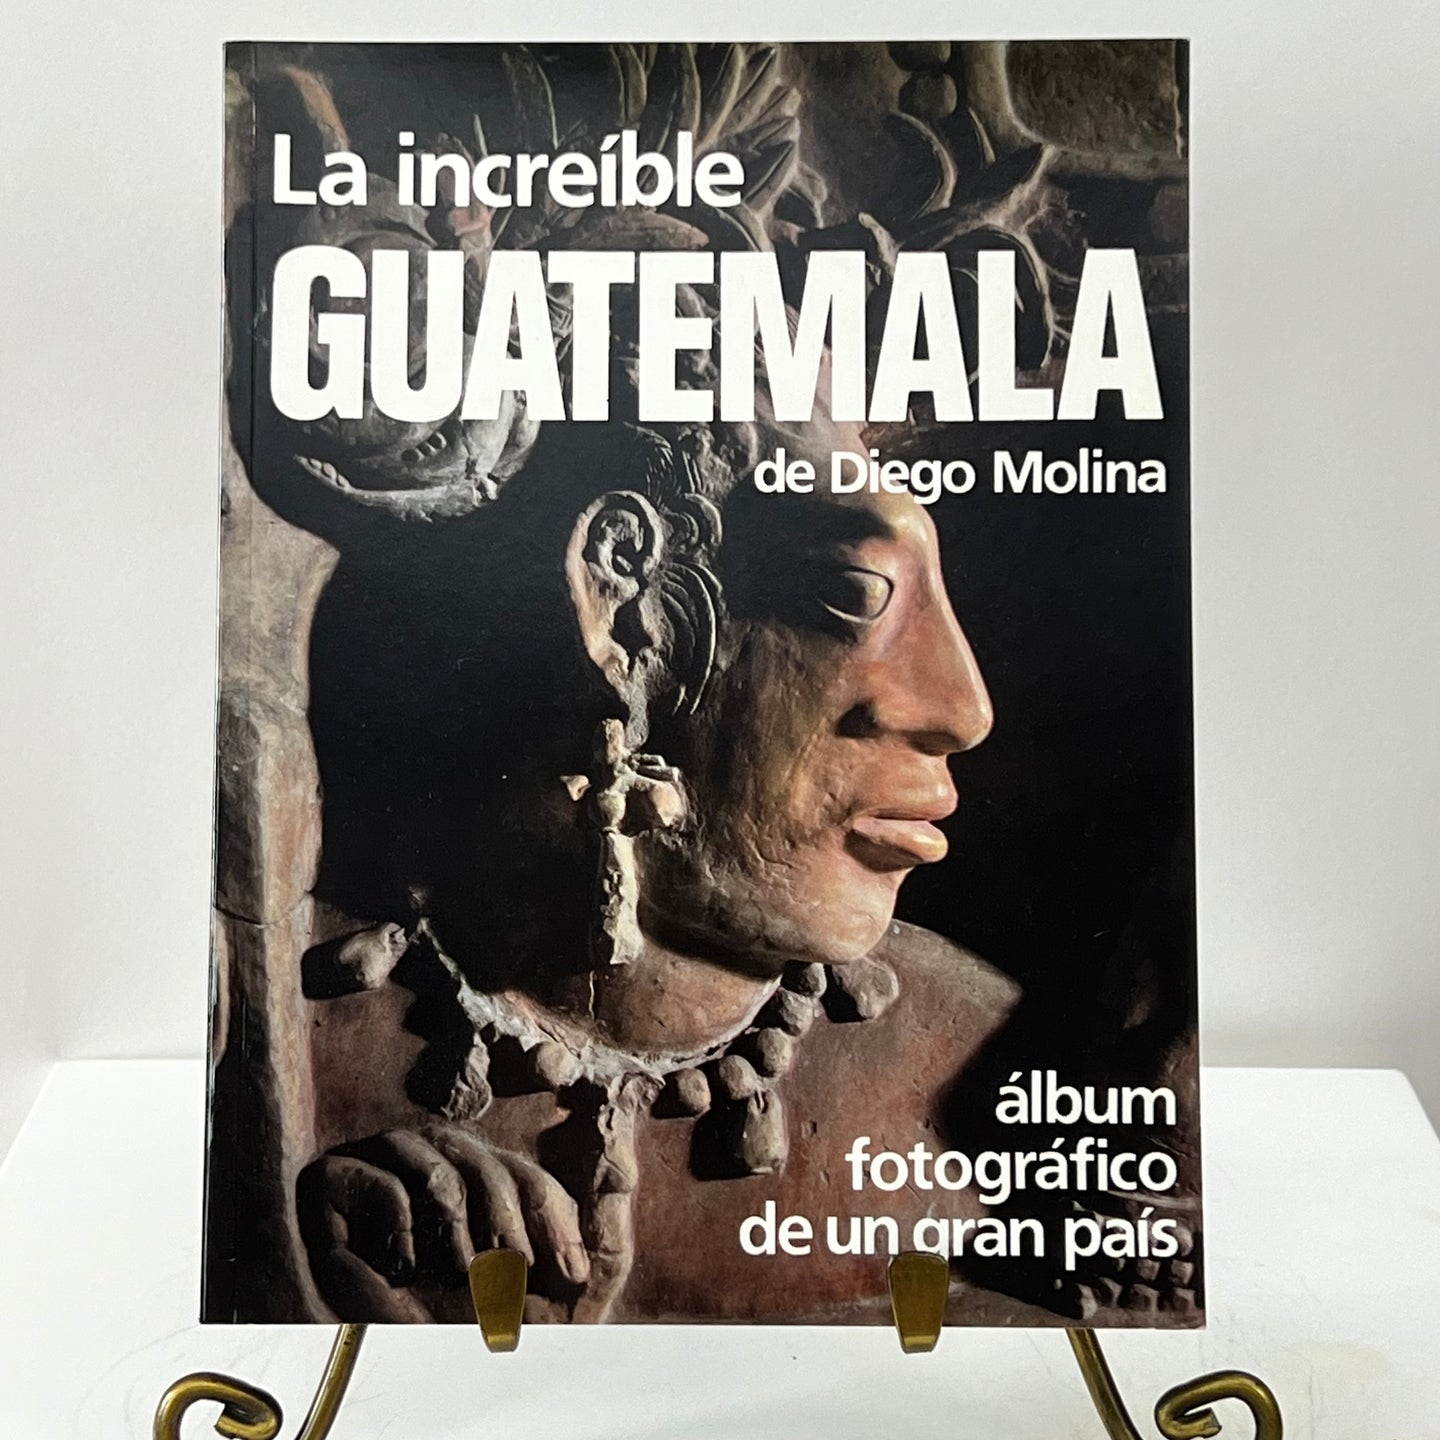 La increible Guatemala de Diego Molina